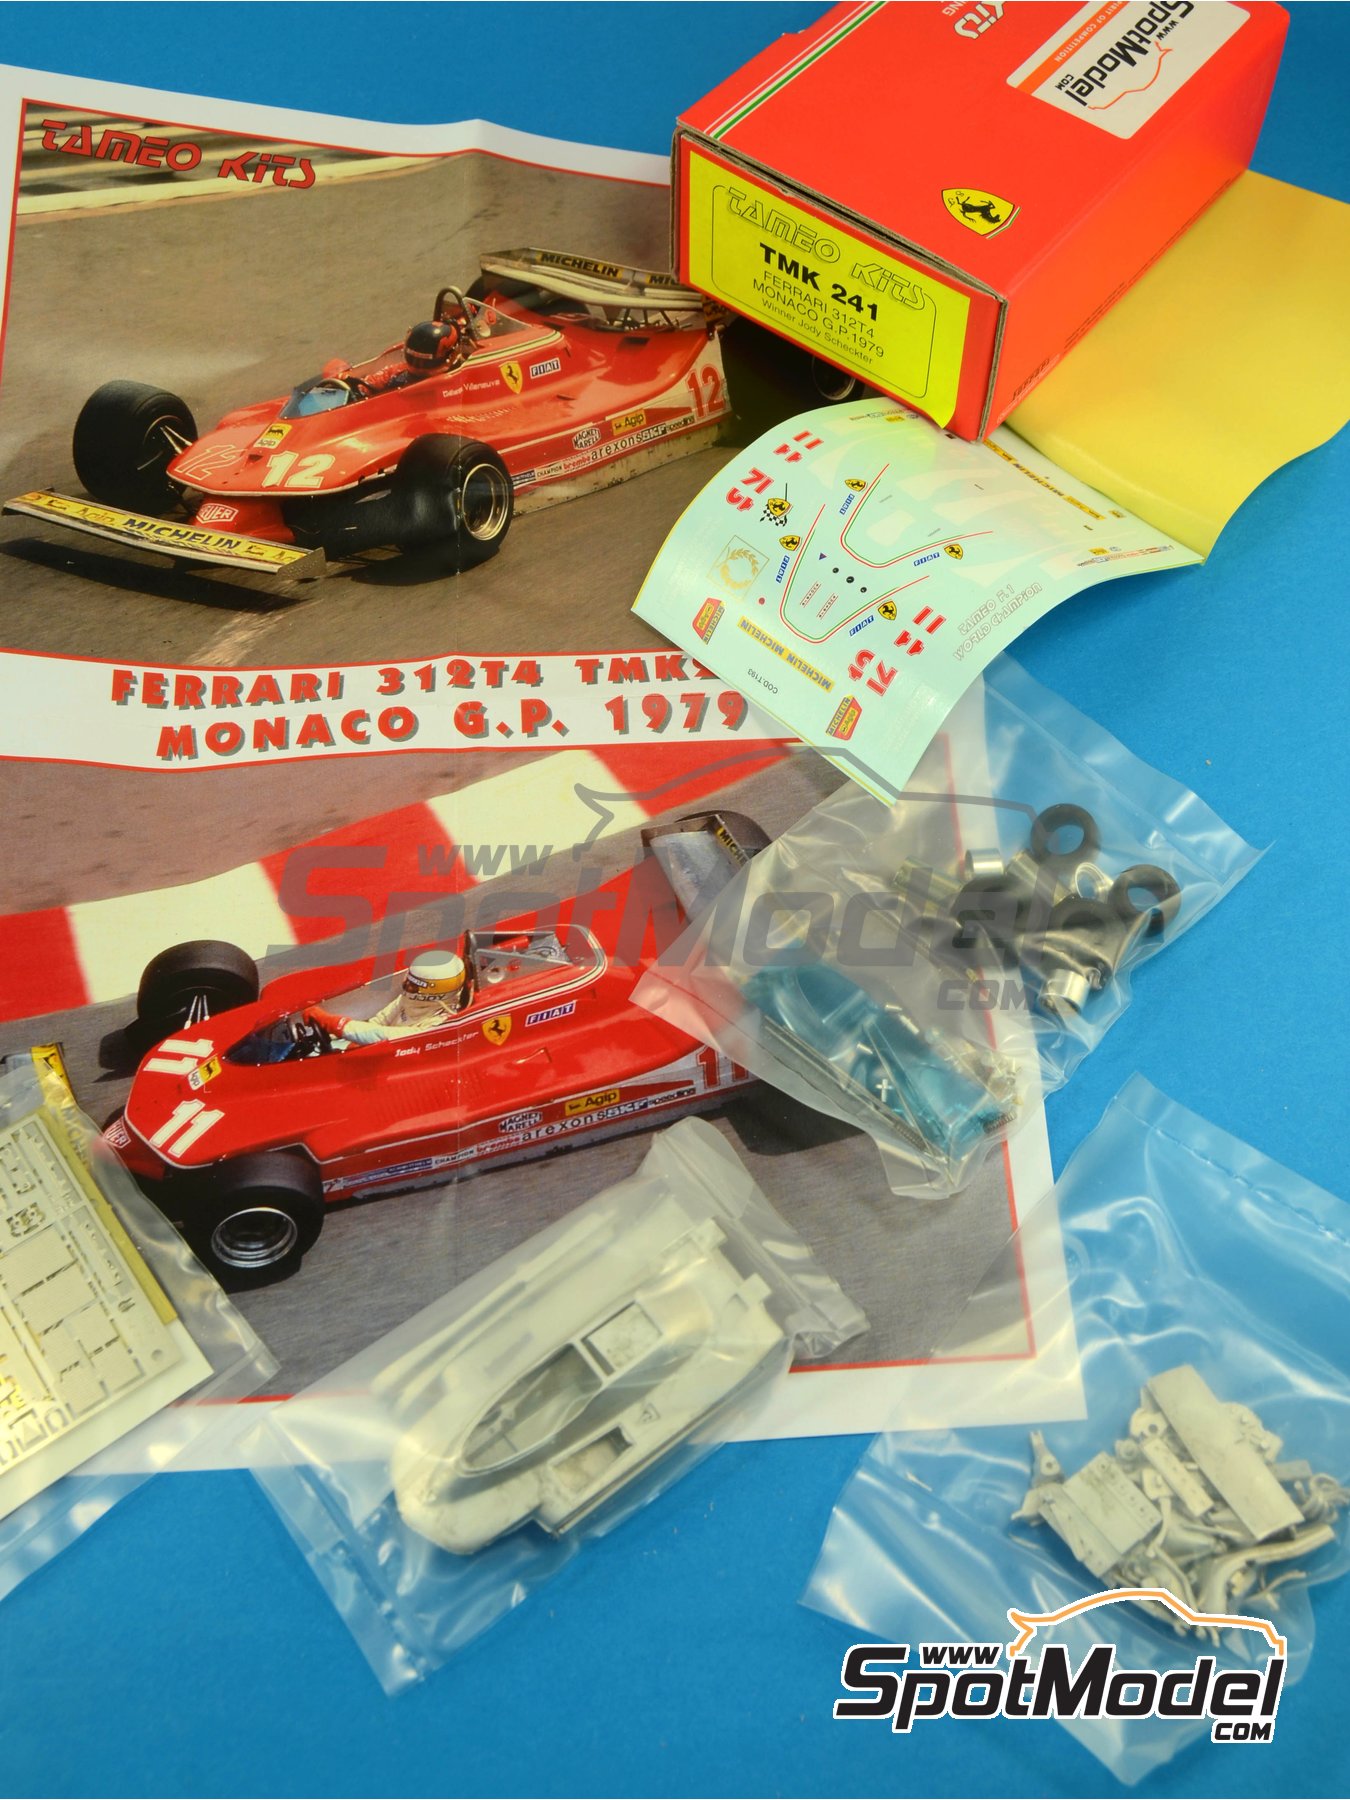 Ferrari 312T4 Scuderia Ferrari Team sponsored by Fiat - Monaco Formula 1  Grand Prix 1979. Car scale model kit in 1/43 scale manufactured by Tameo  Kits